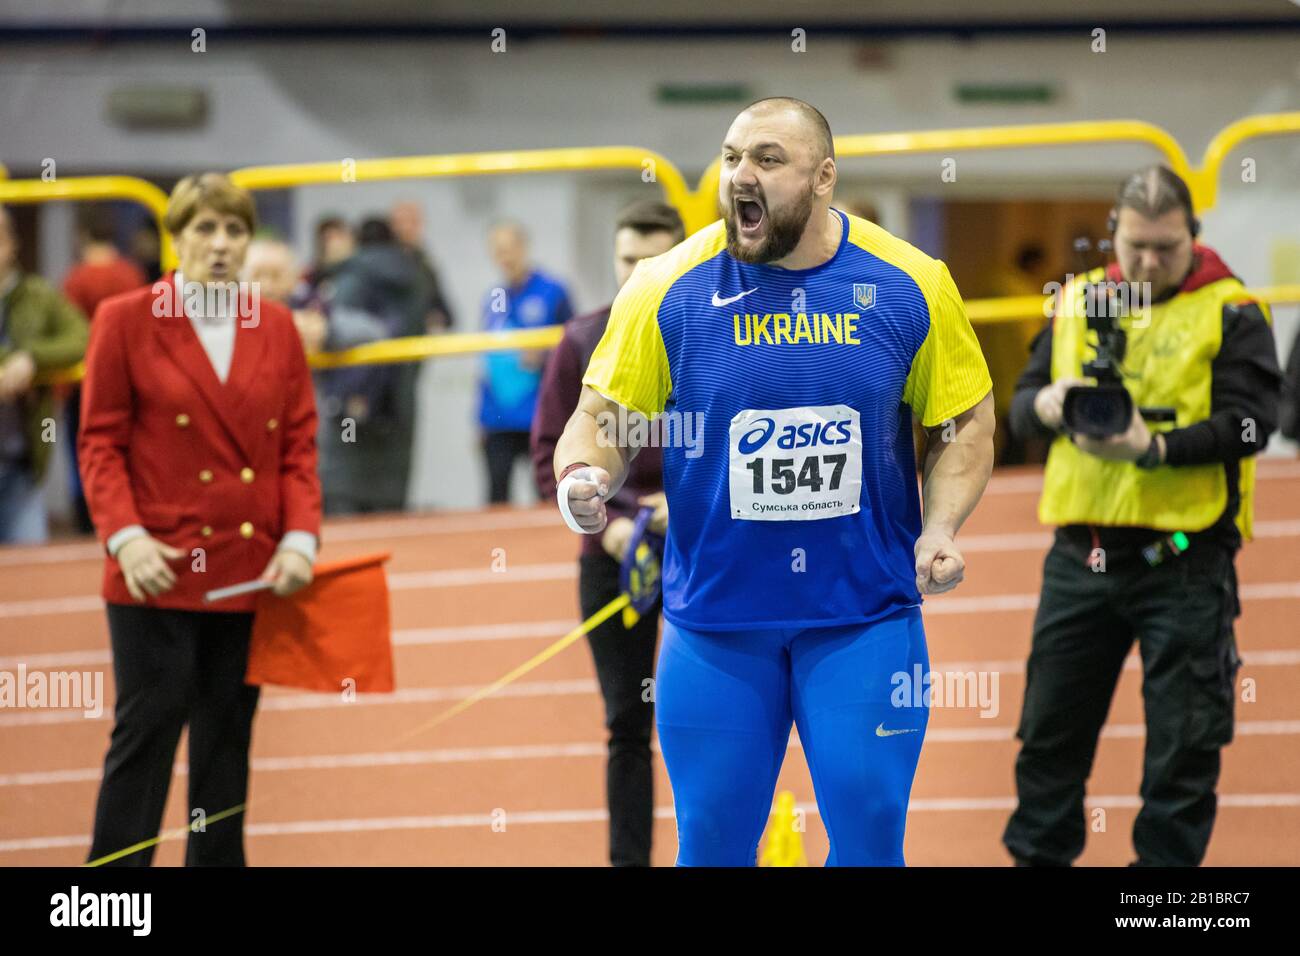 SUMY, UKRAINE - FEBRUARY 20, 2020: Ihor Musiyenko champion in shot put on Ukrainian indoor track and field championship 2020 Stock Photo